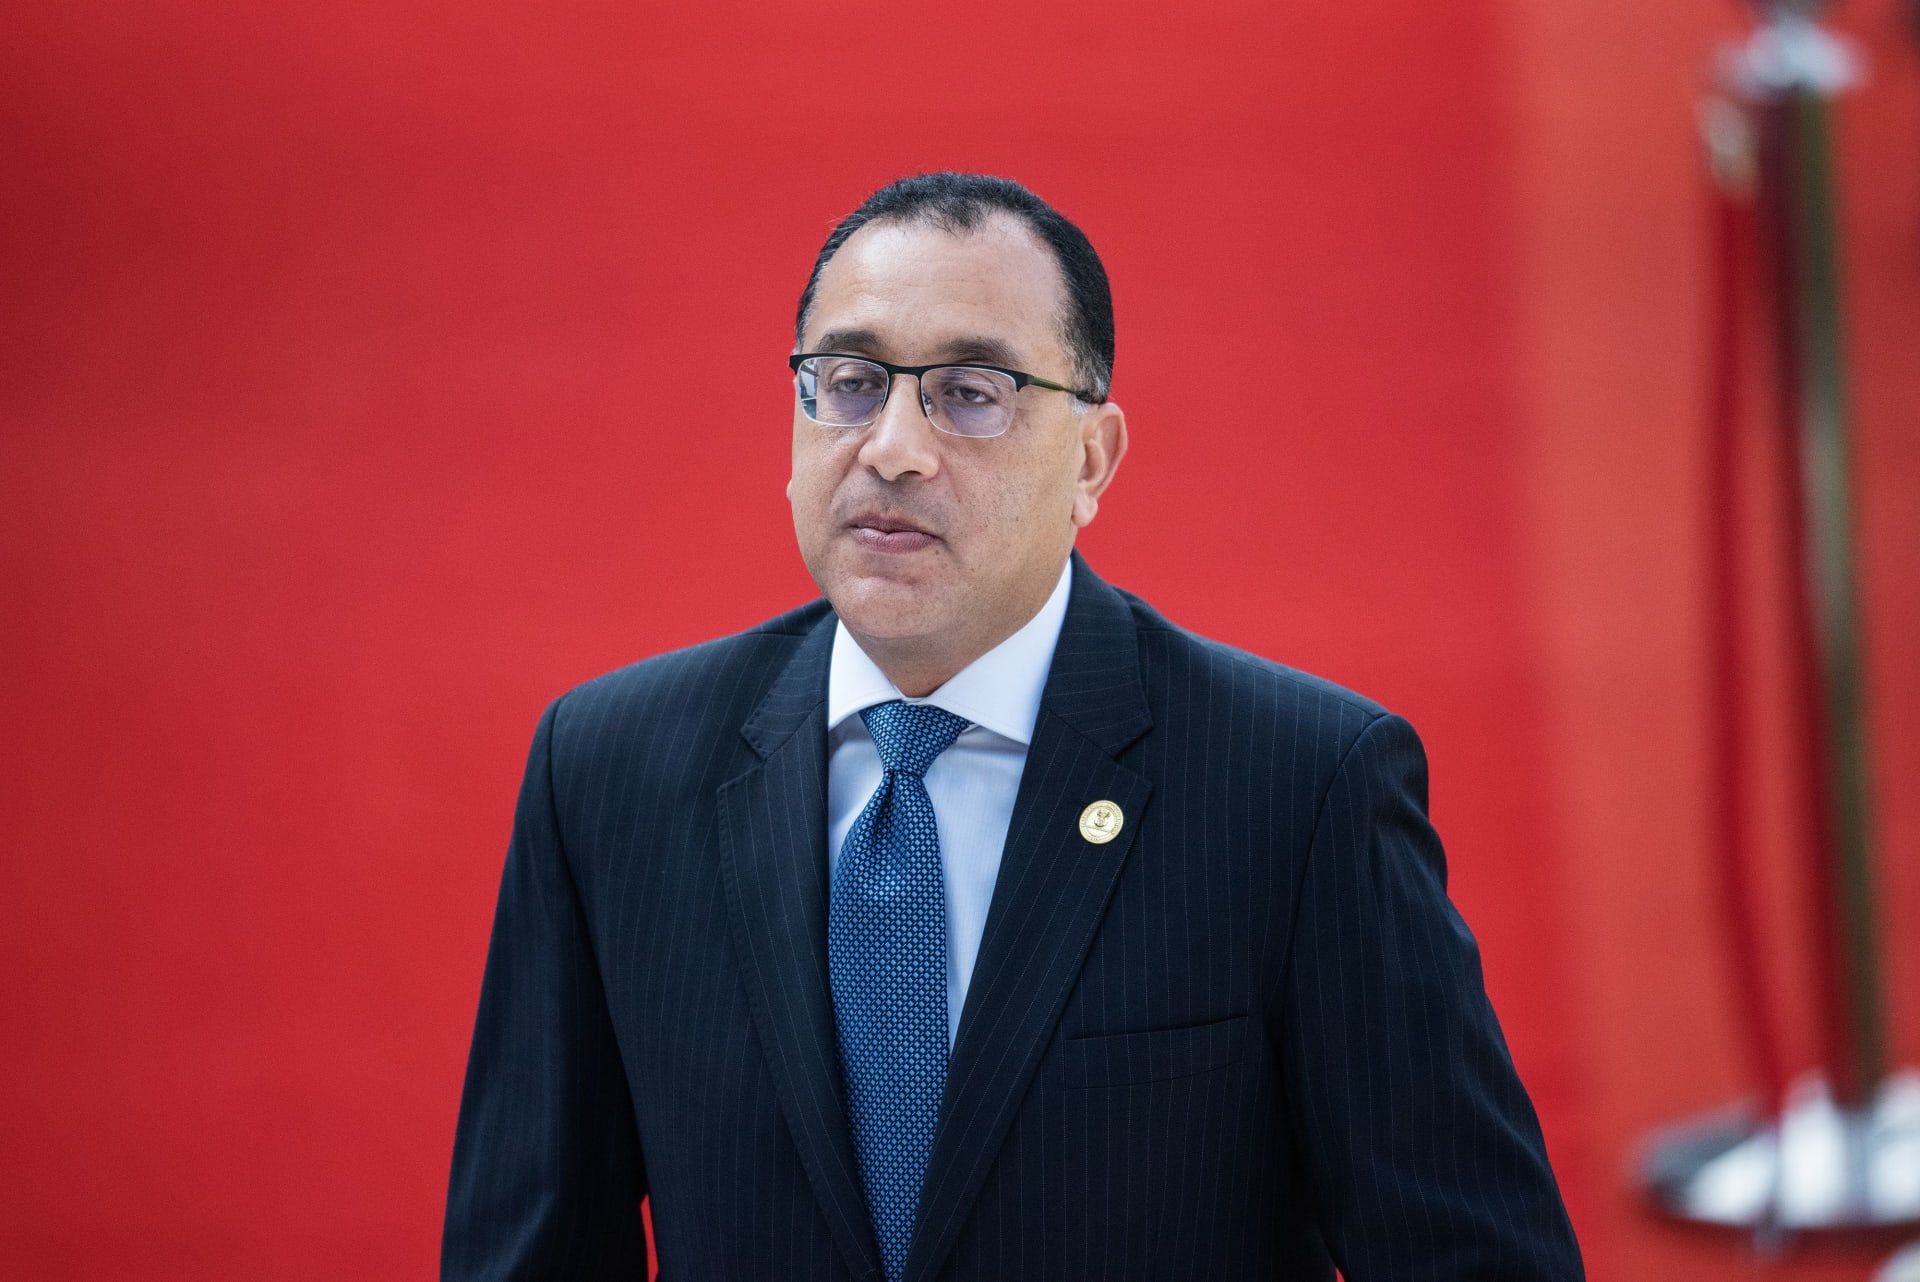 مصر.. تعديل حكومي يعيد وزارة الإعلام بعد 5 سنوات من إلغائها.. ويطيح بـ 10 وزراء